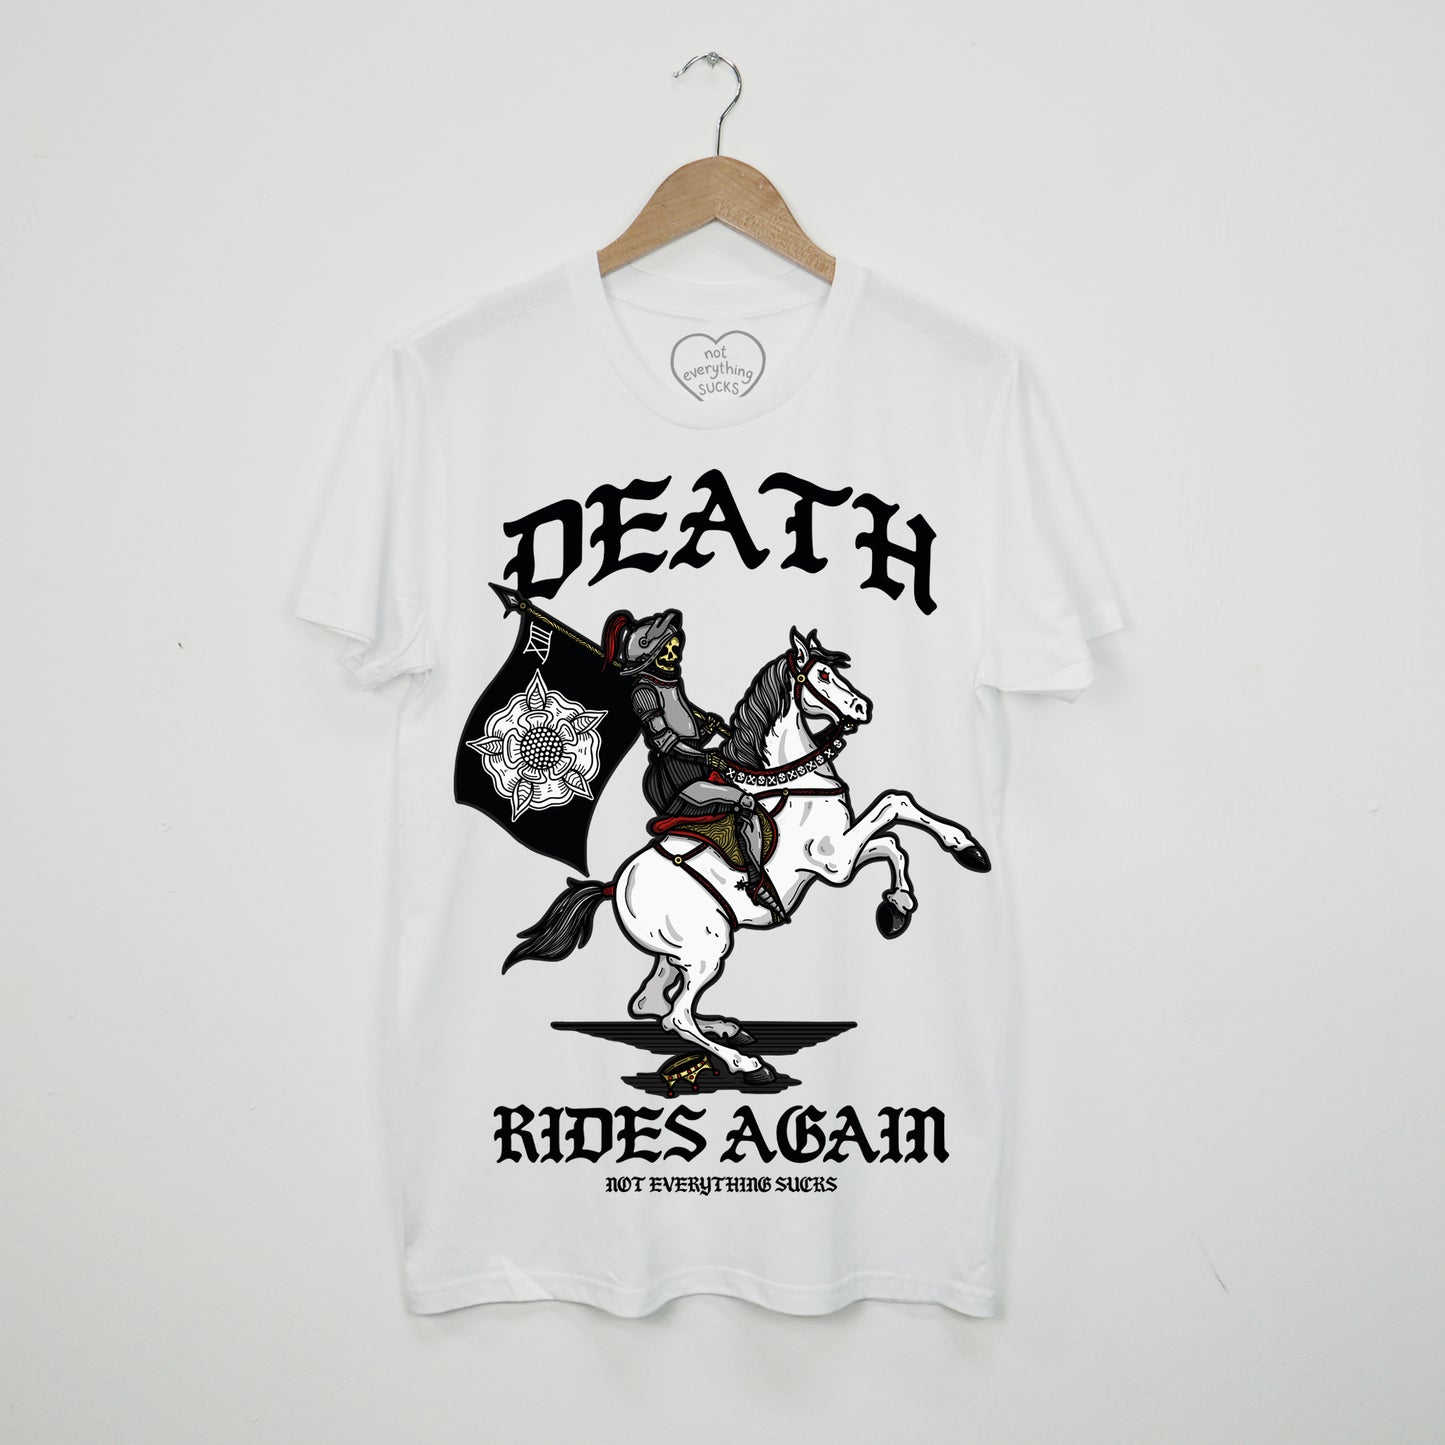 Death Rides Again T-Shirt